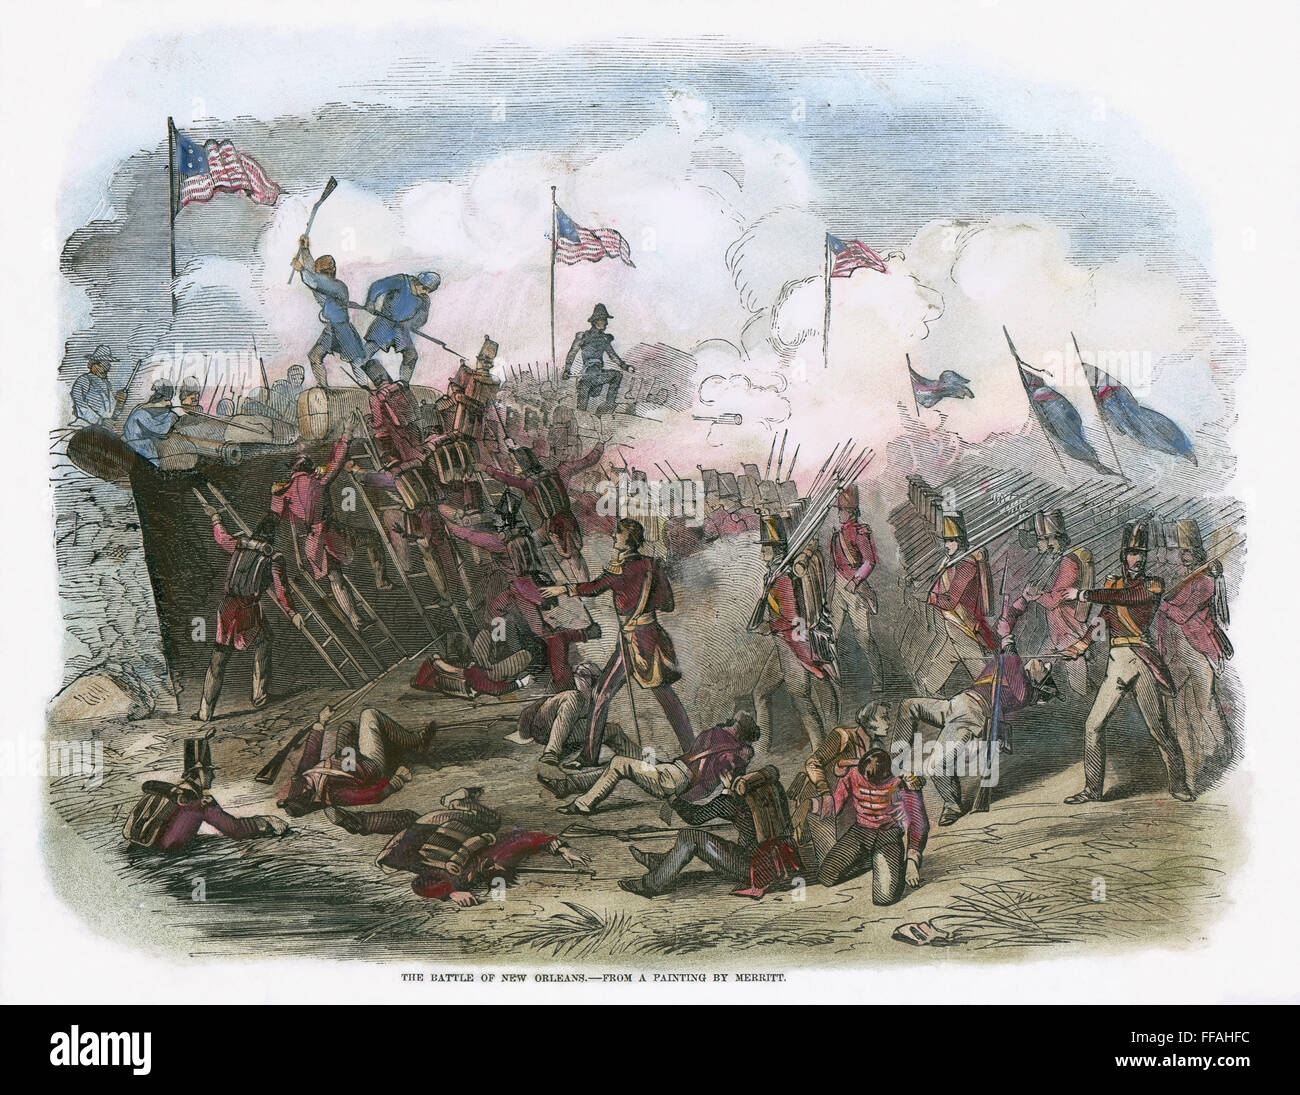 La batalla de Nueva Orleans, 1815. /Fuerzas nBritish frustrado en su avance sobre las posiciones estadounidenses en la batalla de Nueva Orleans, el 8 de enero de 1815. El grabado en madera, inglés, 1853, después de una pintura de Merritt. Foto de stock